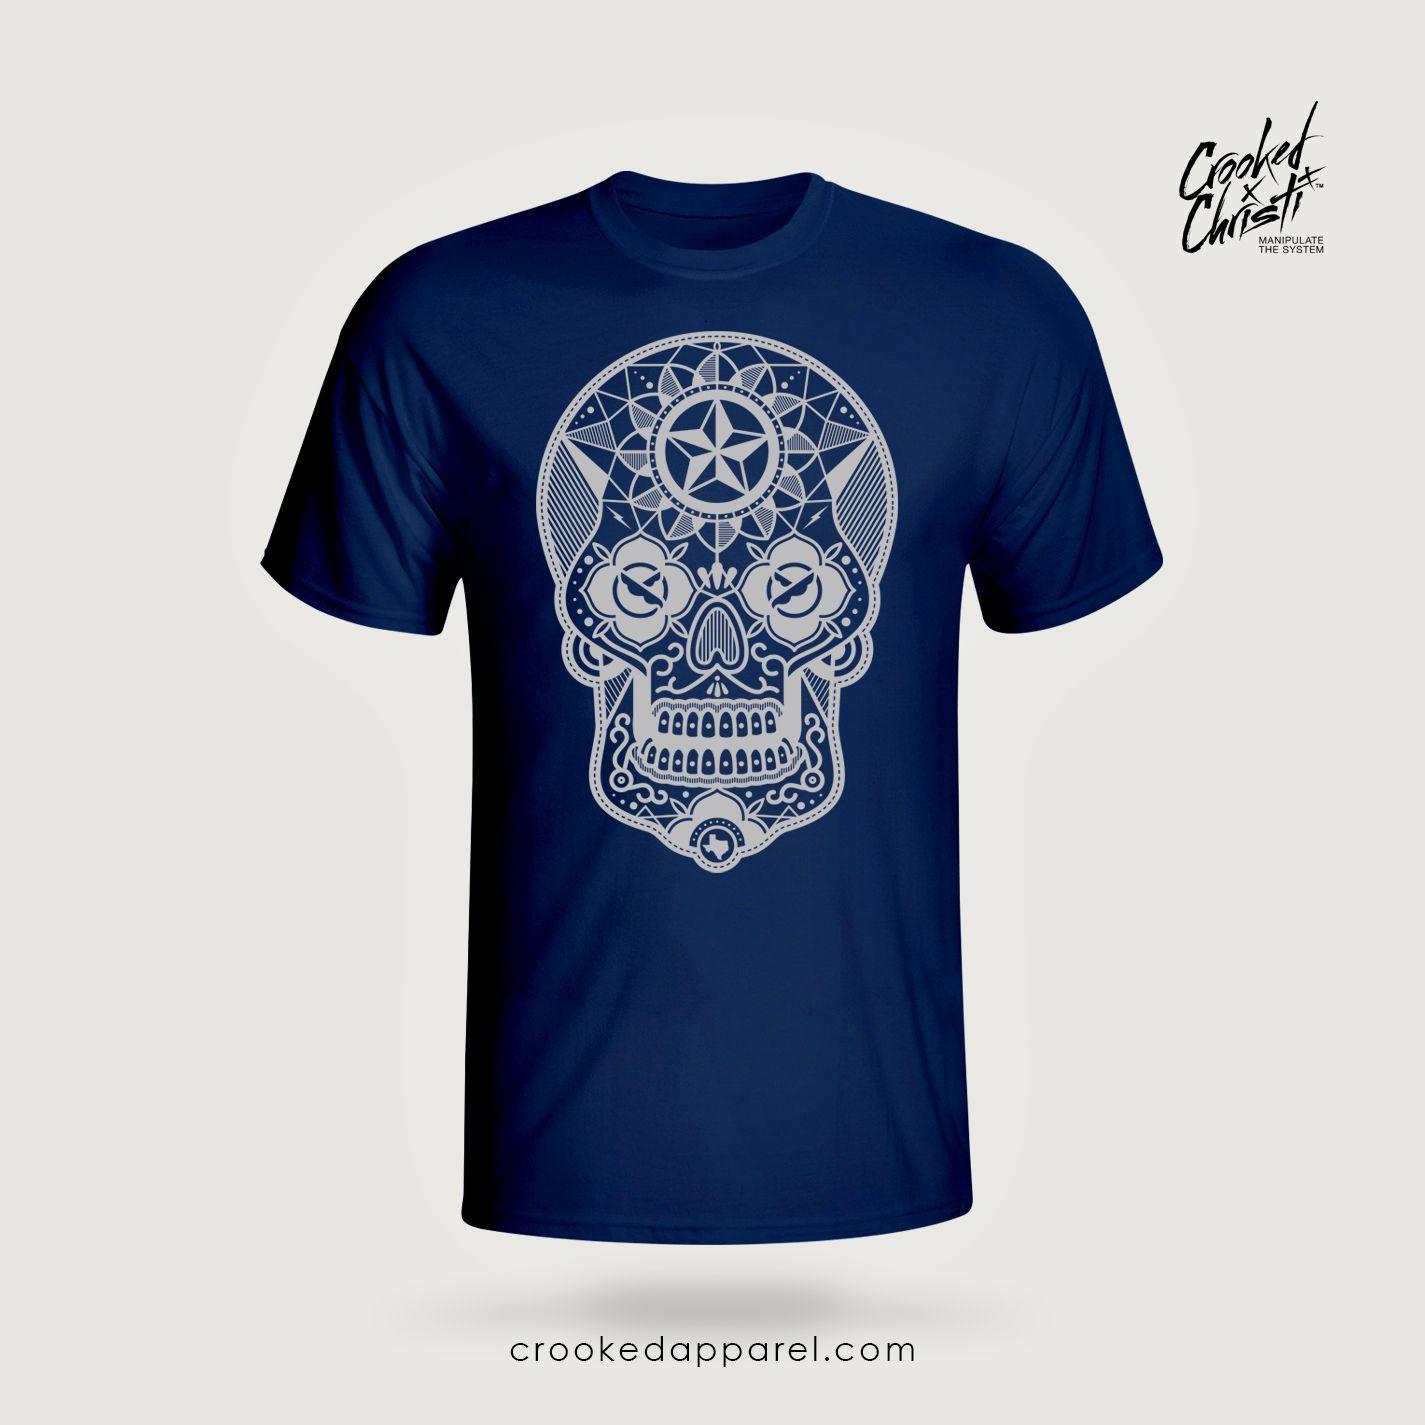 Navy Blue and Silver Logo - T Shirts. El Día De Los Crooked III. Crooked Christi Streetwear